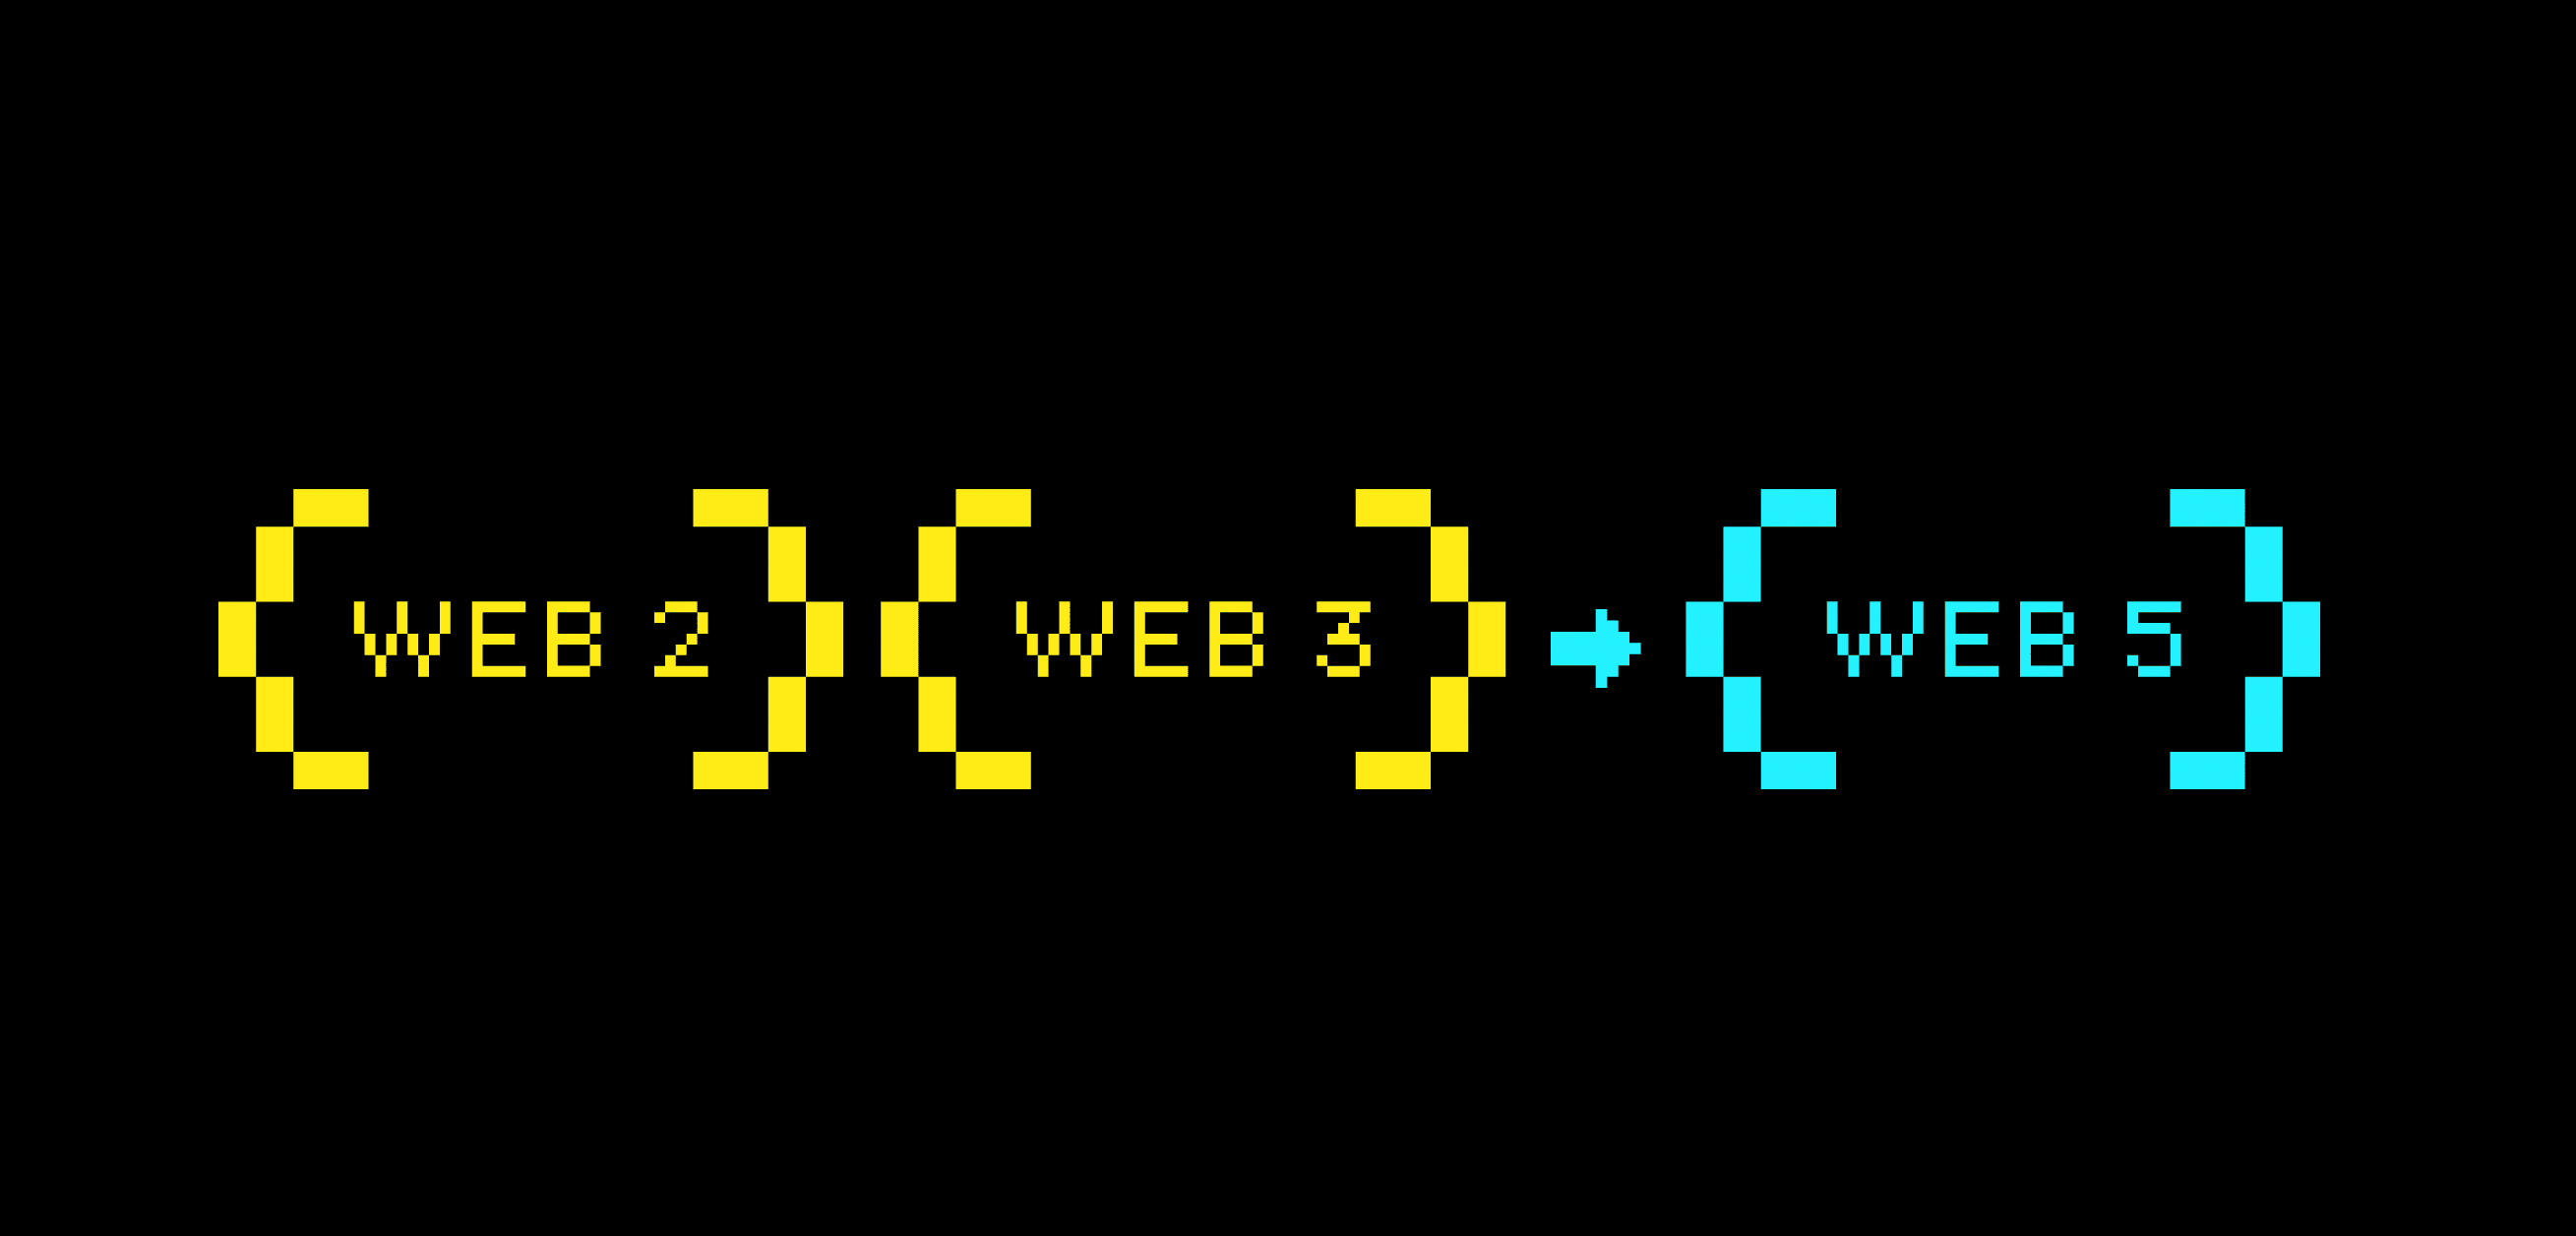 Web2 Web3 to Web5